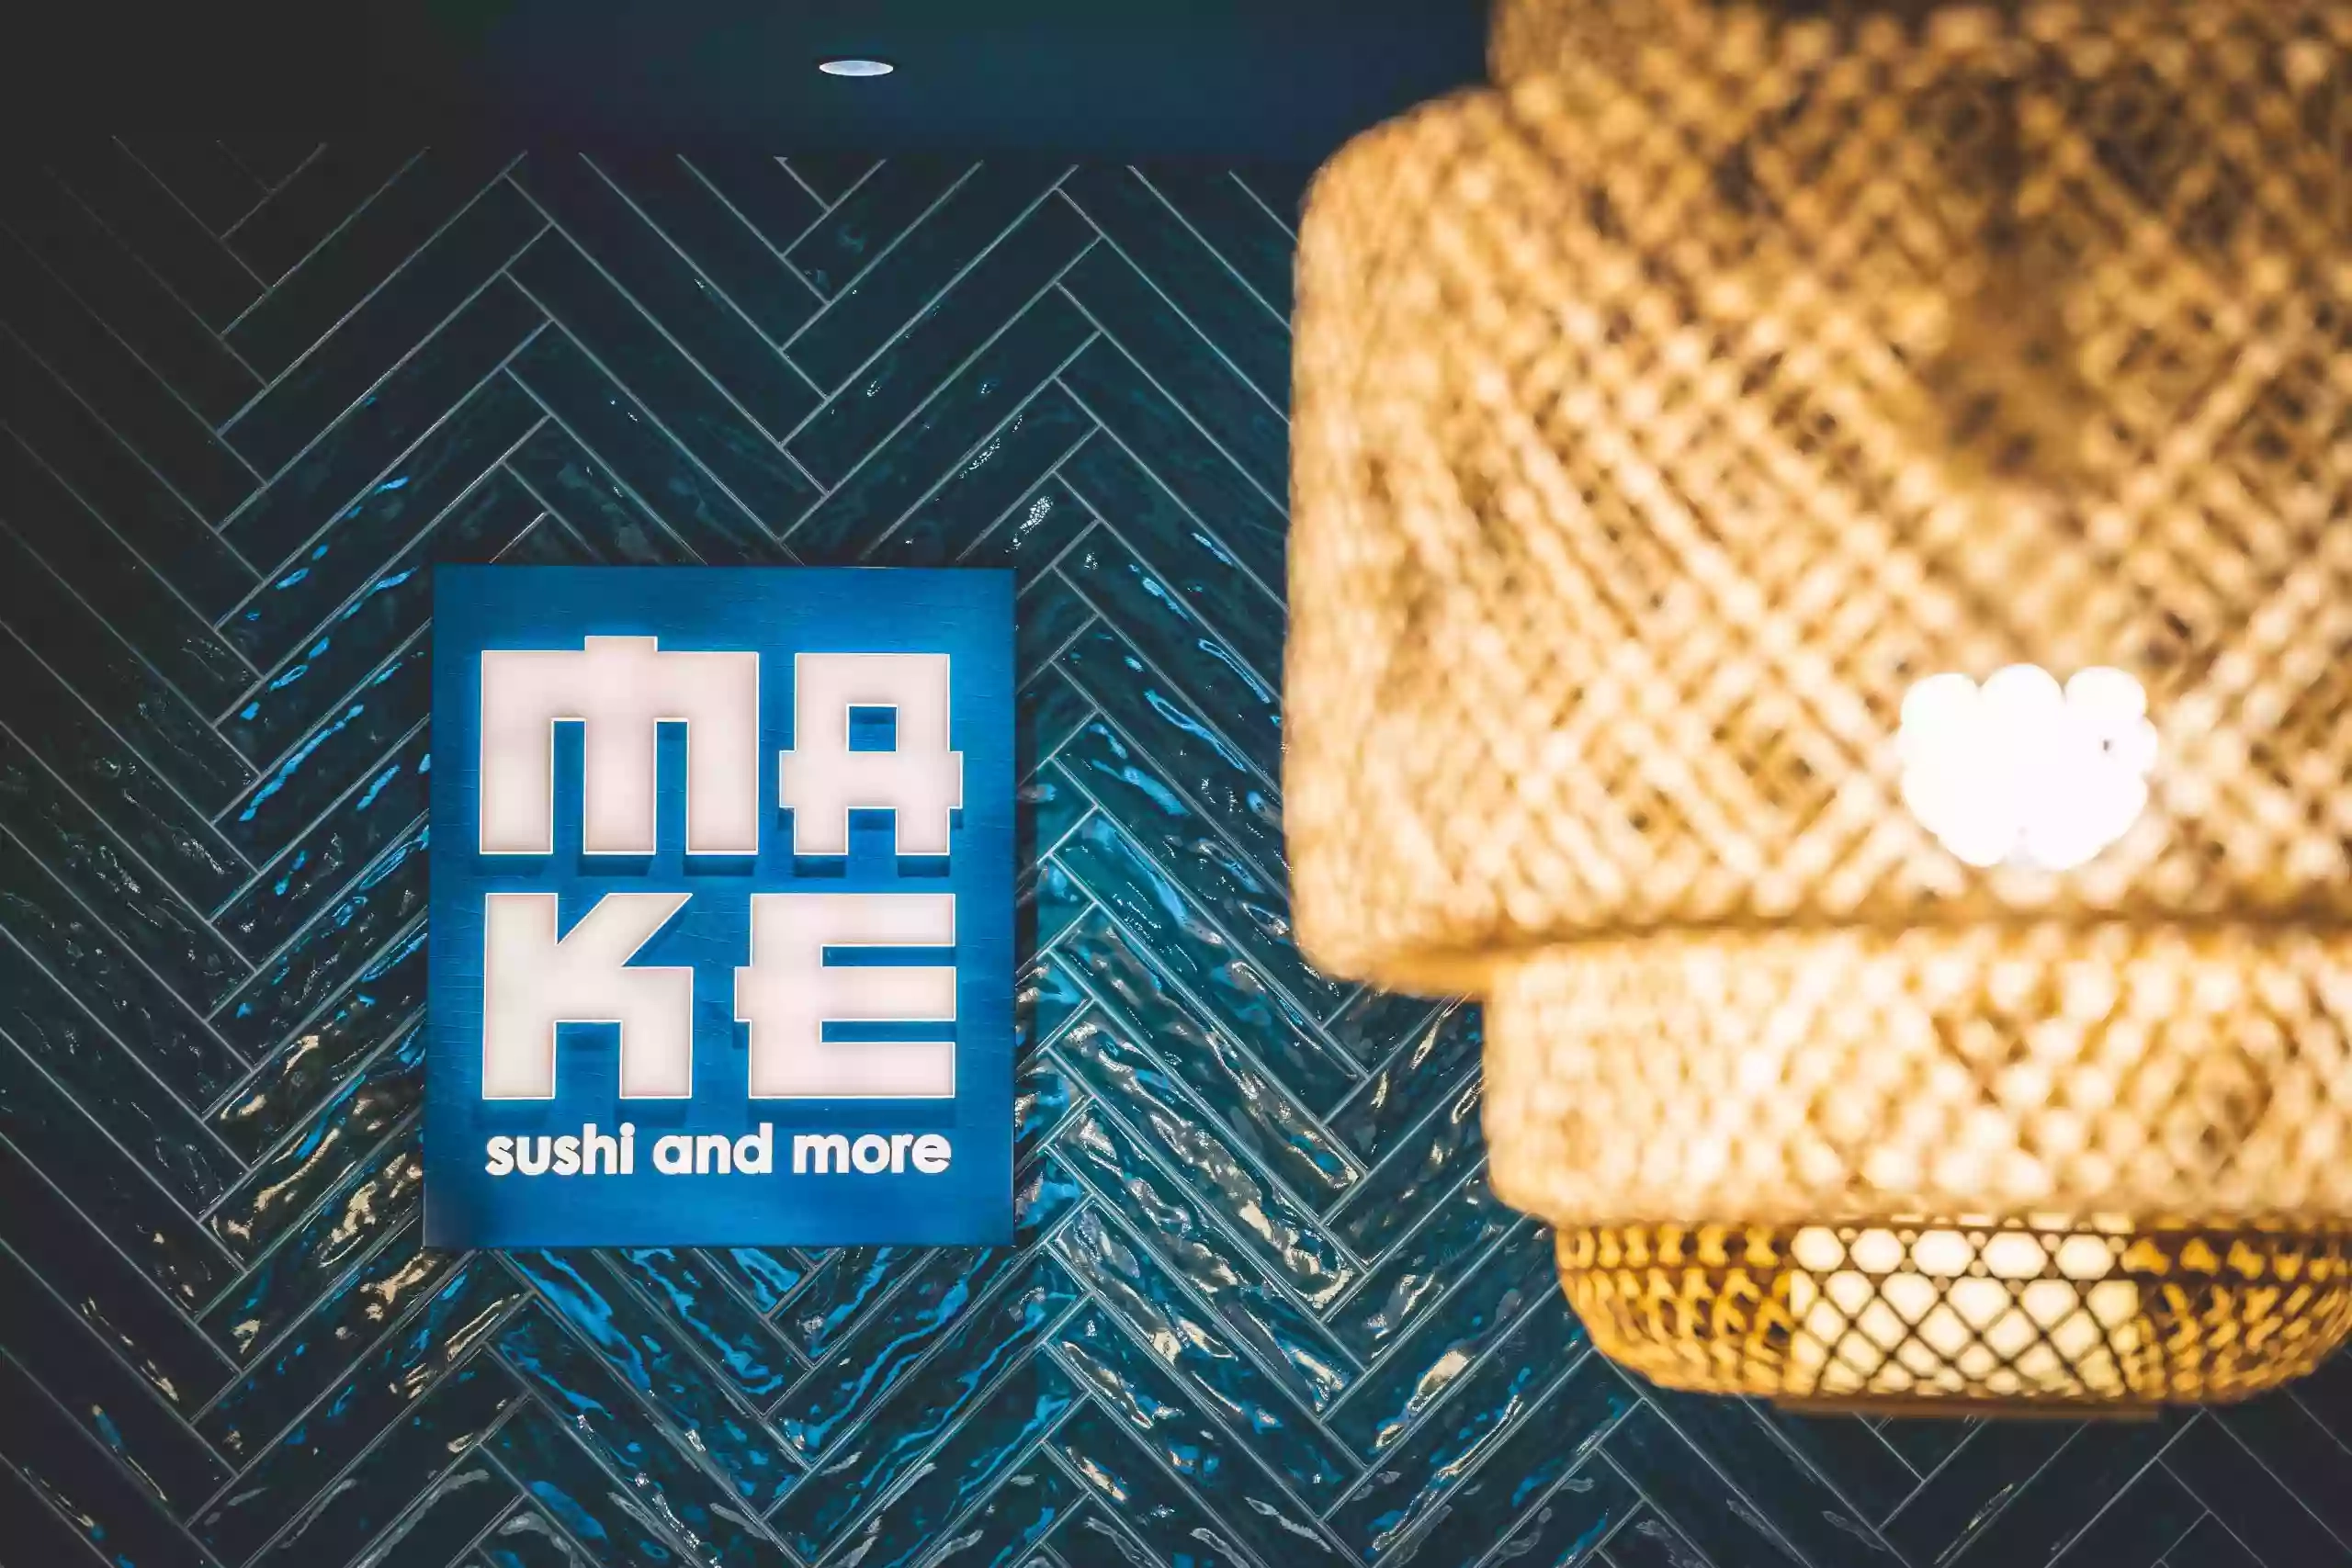 Make Sushi and More